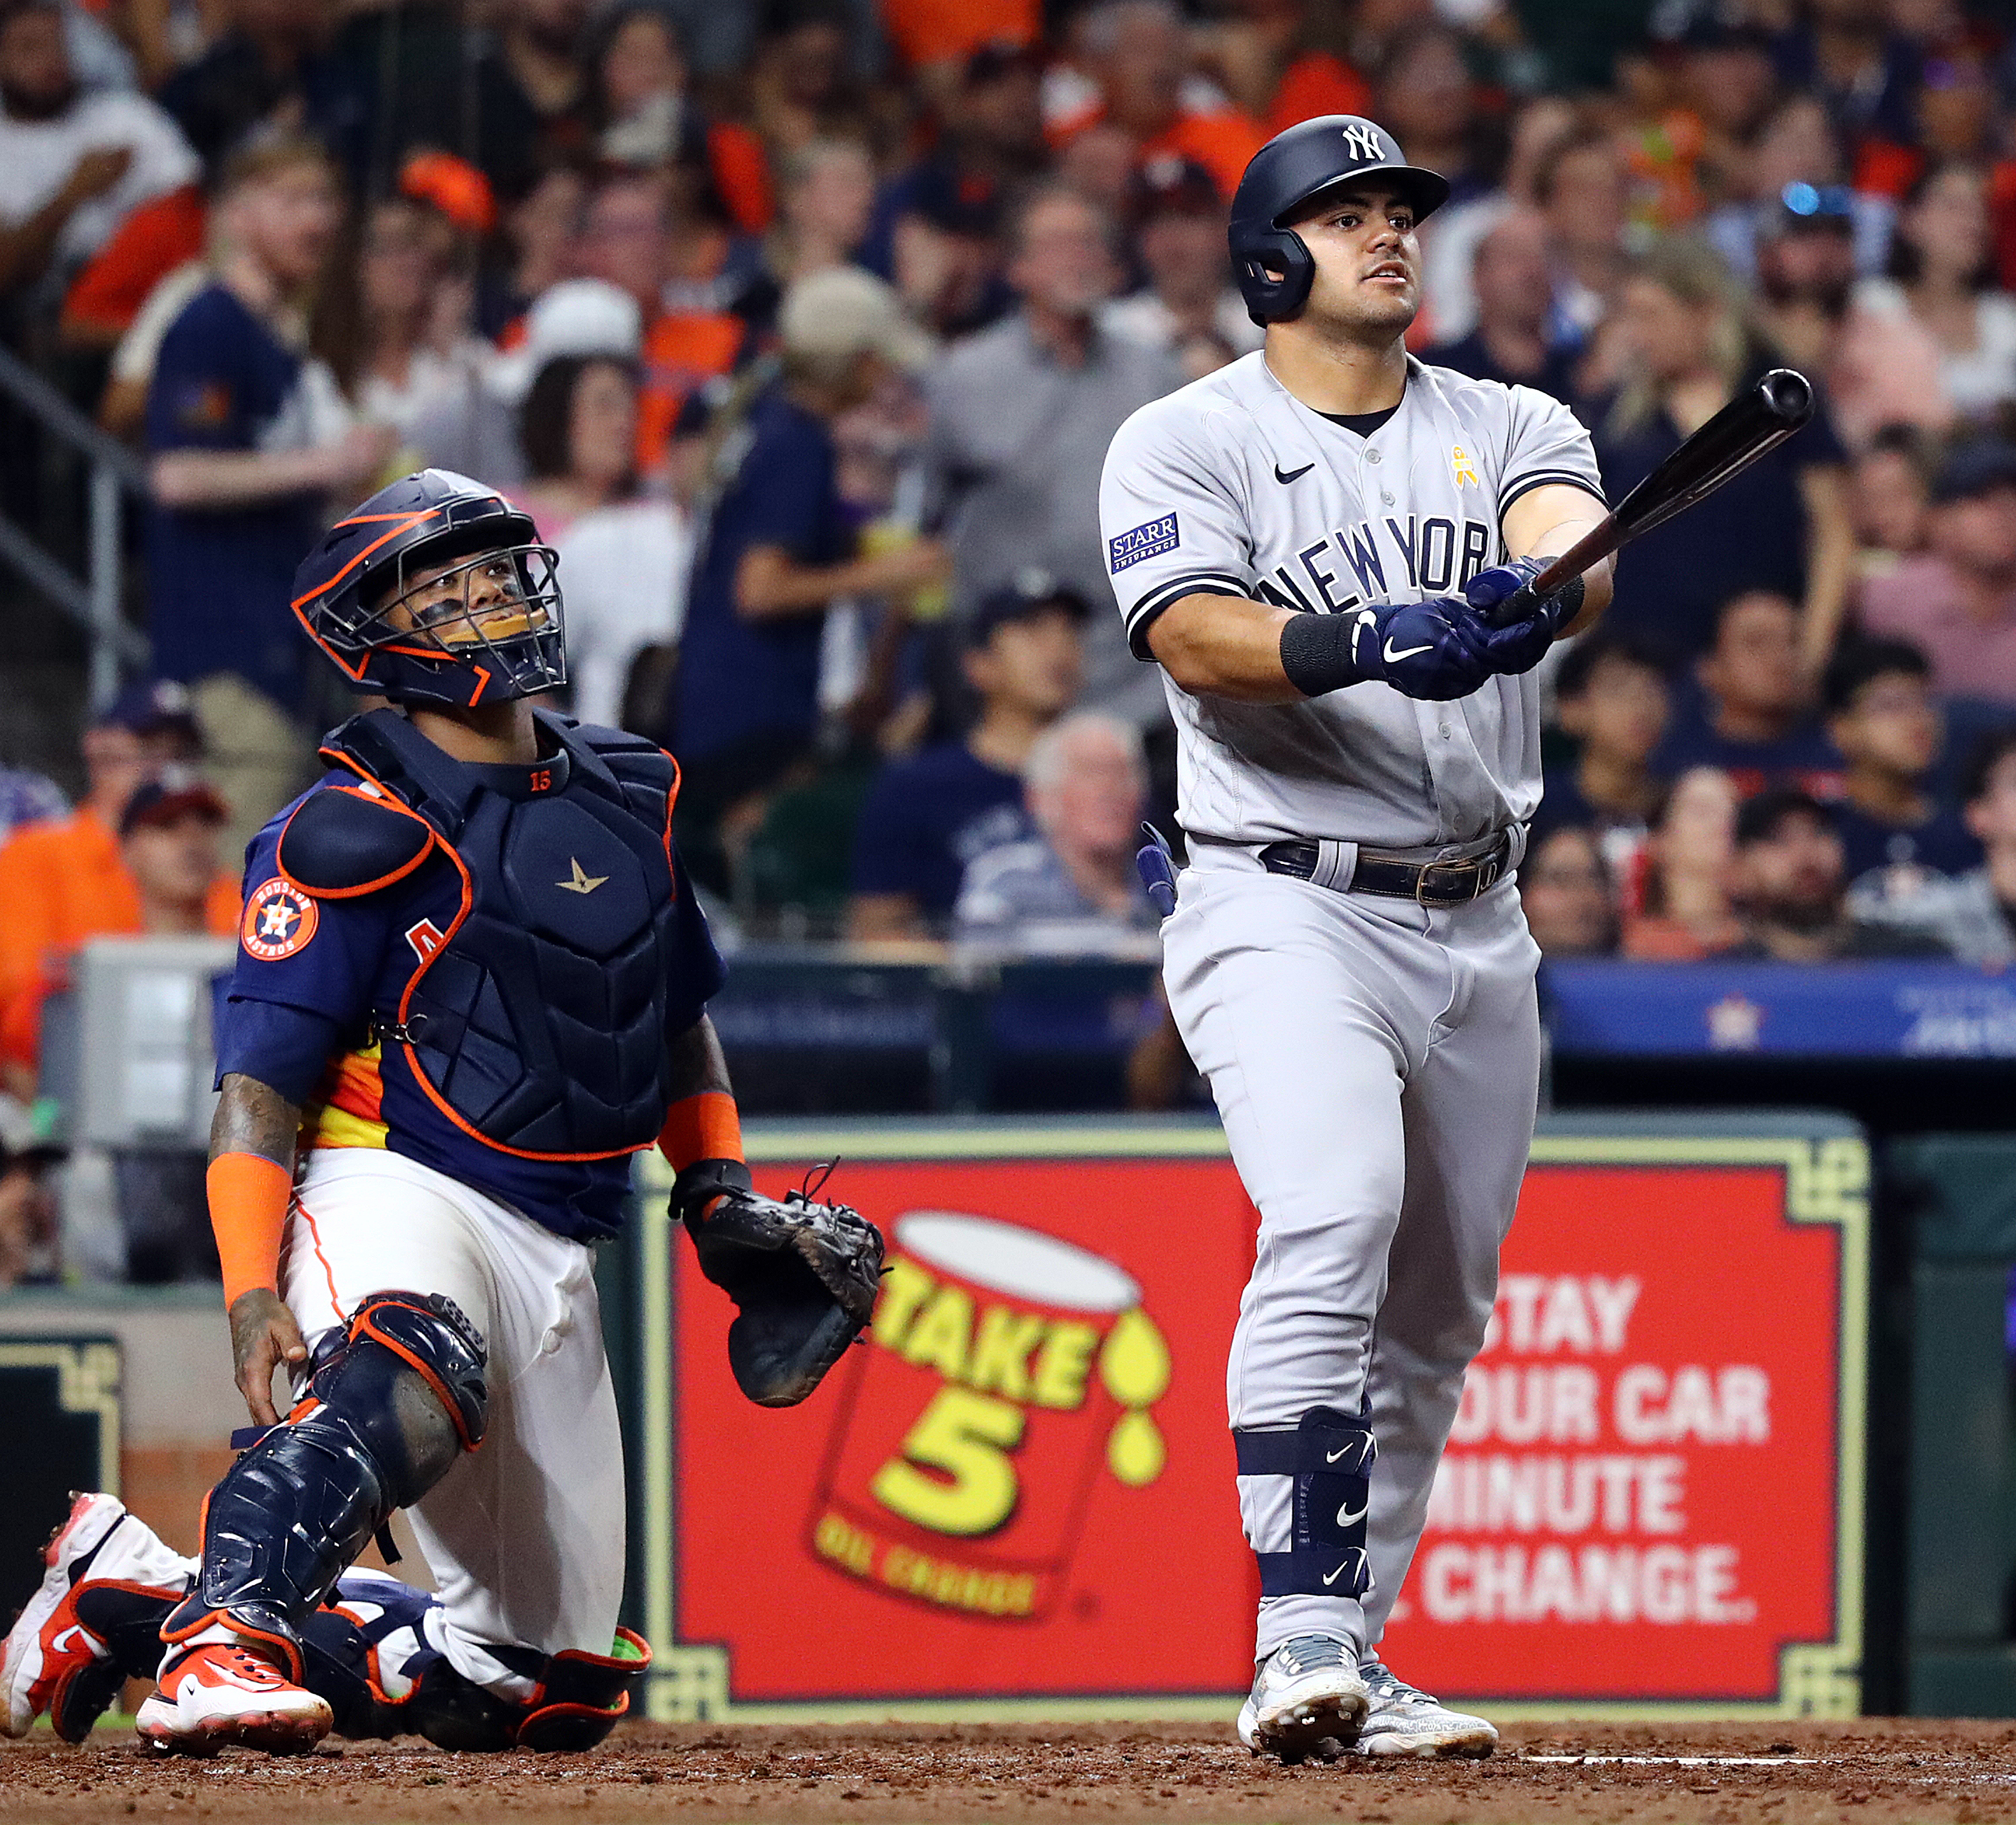 Yordan Alvarez position change raises questions for Astros - SportsMap